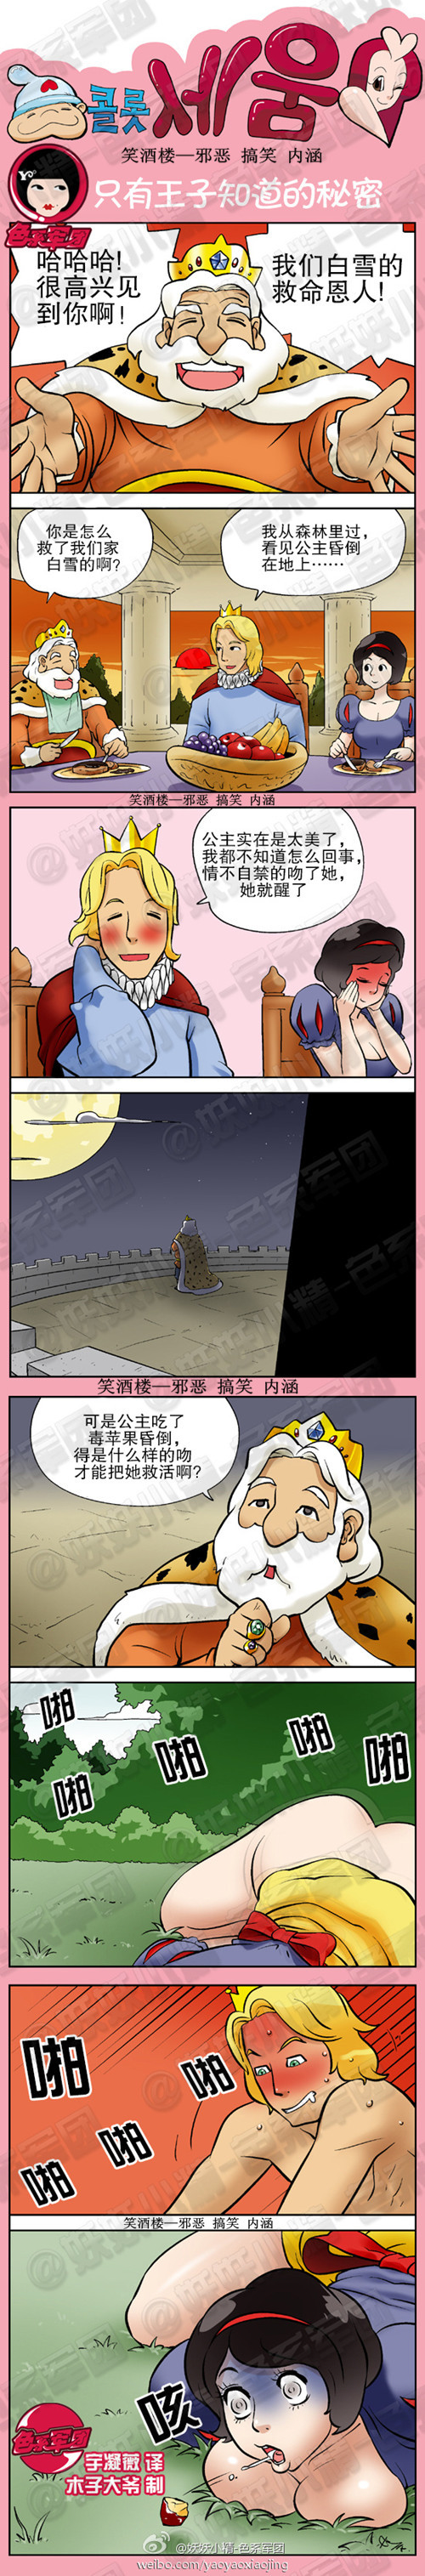 韩国内涵漫画|只有王子知道的秘密